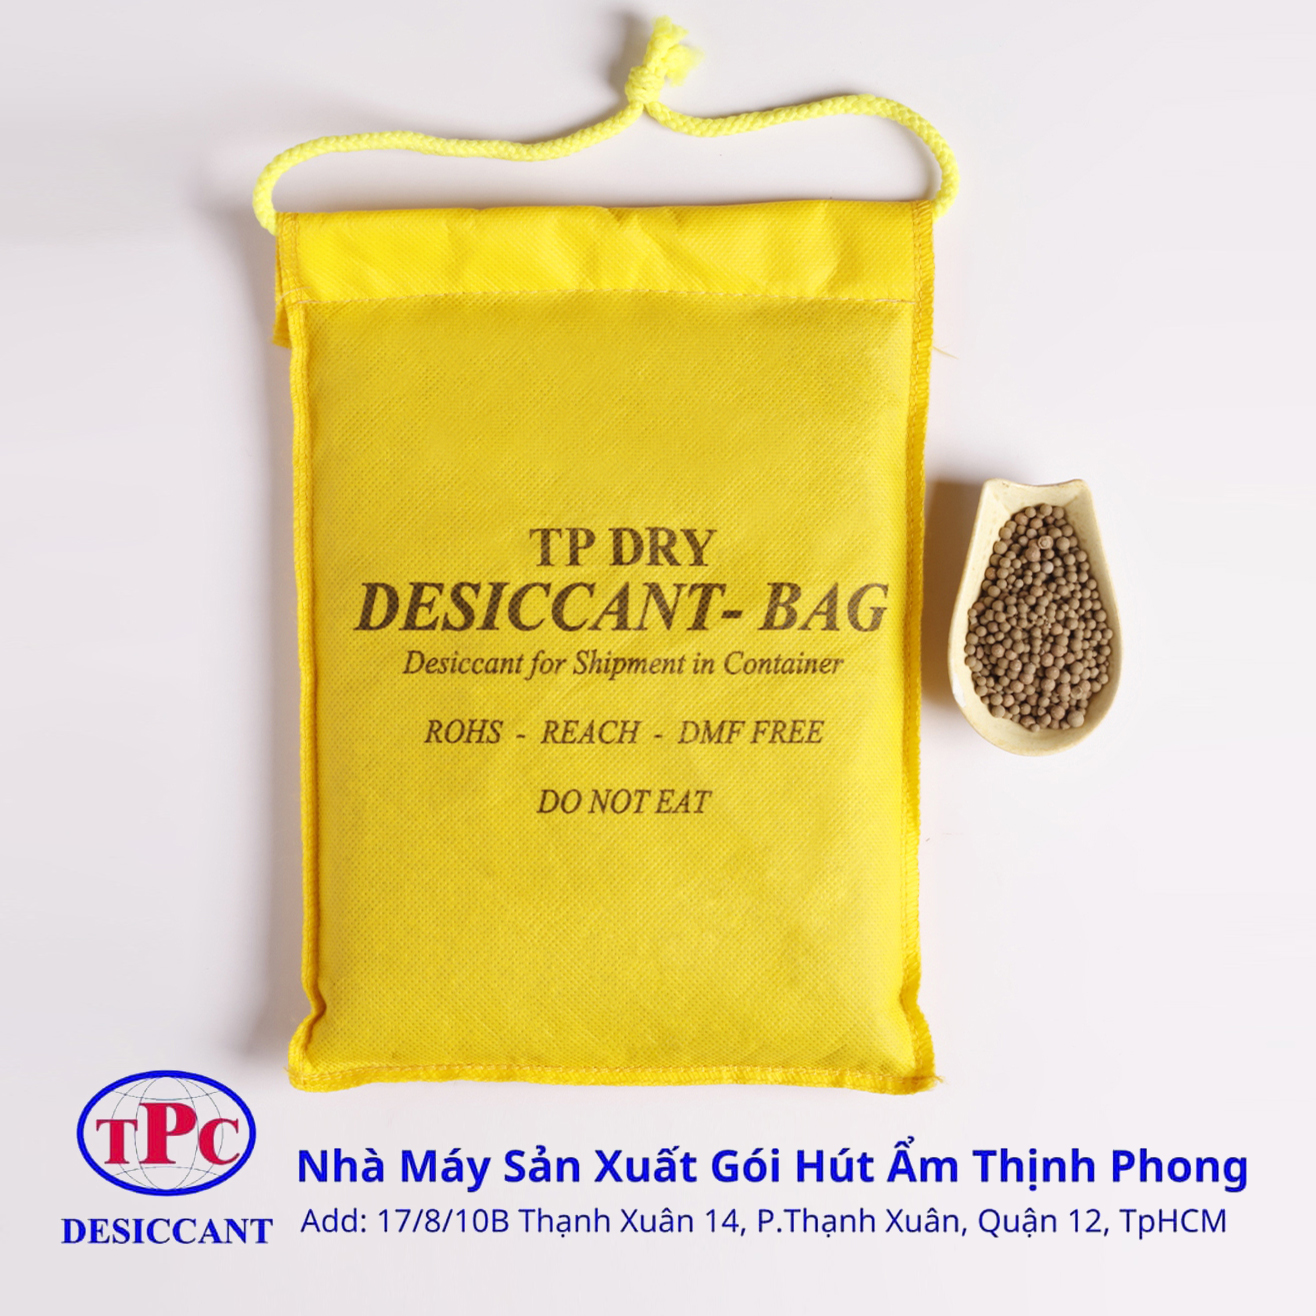 Ưu điểm gói hút ẩm Clay 200g Thịnh Phong